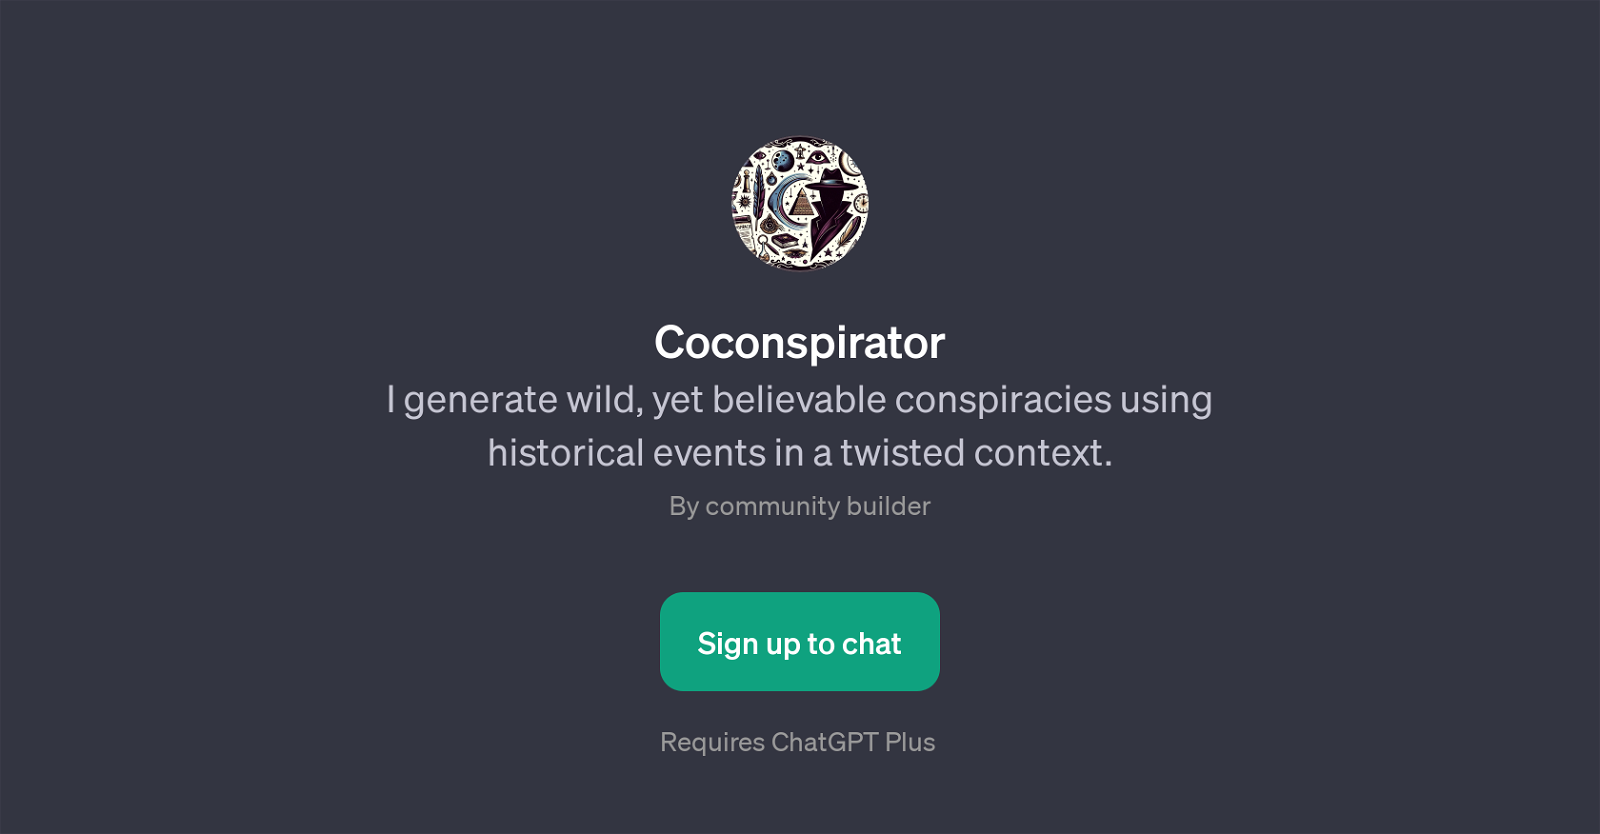 Coconspirator website